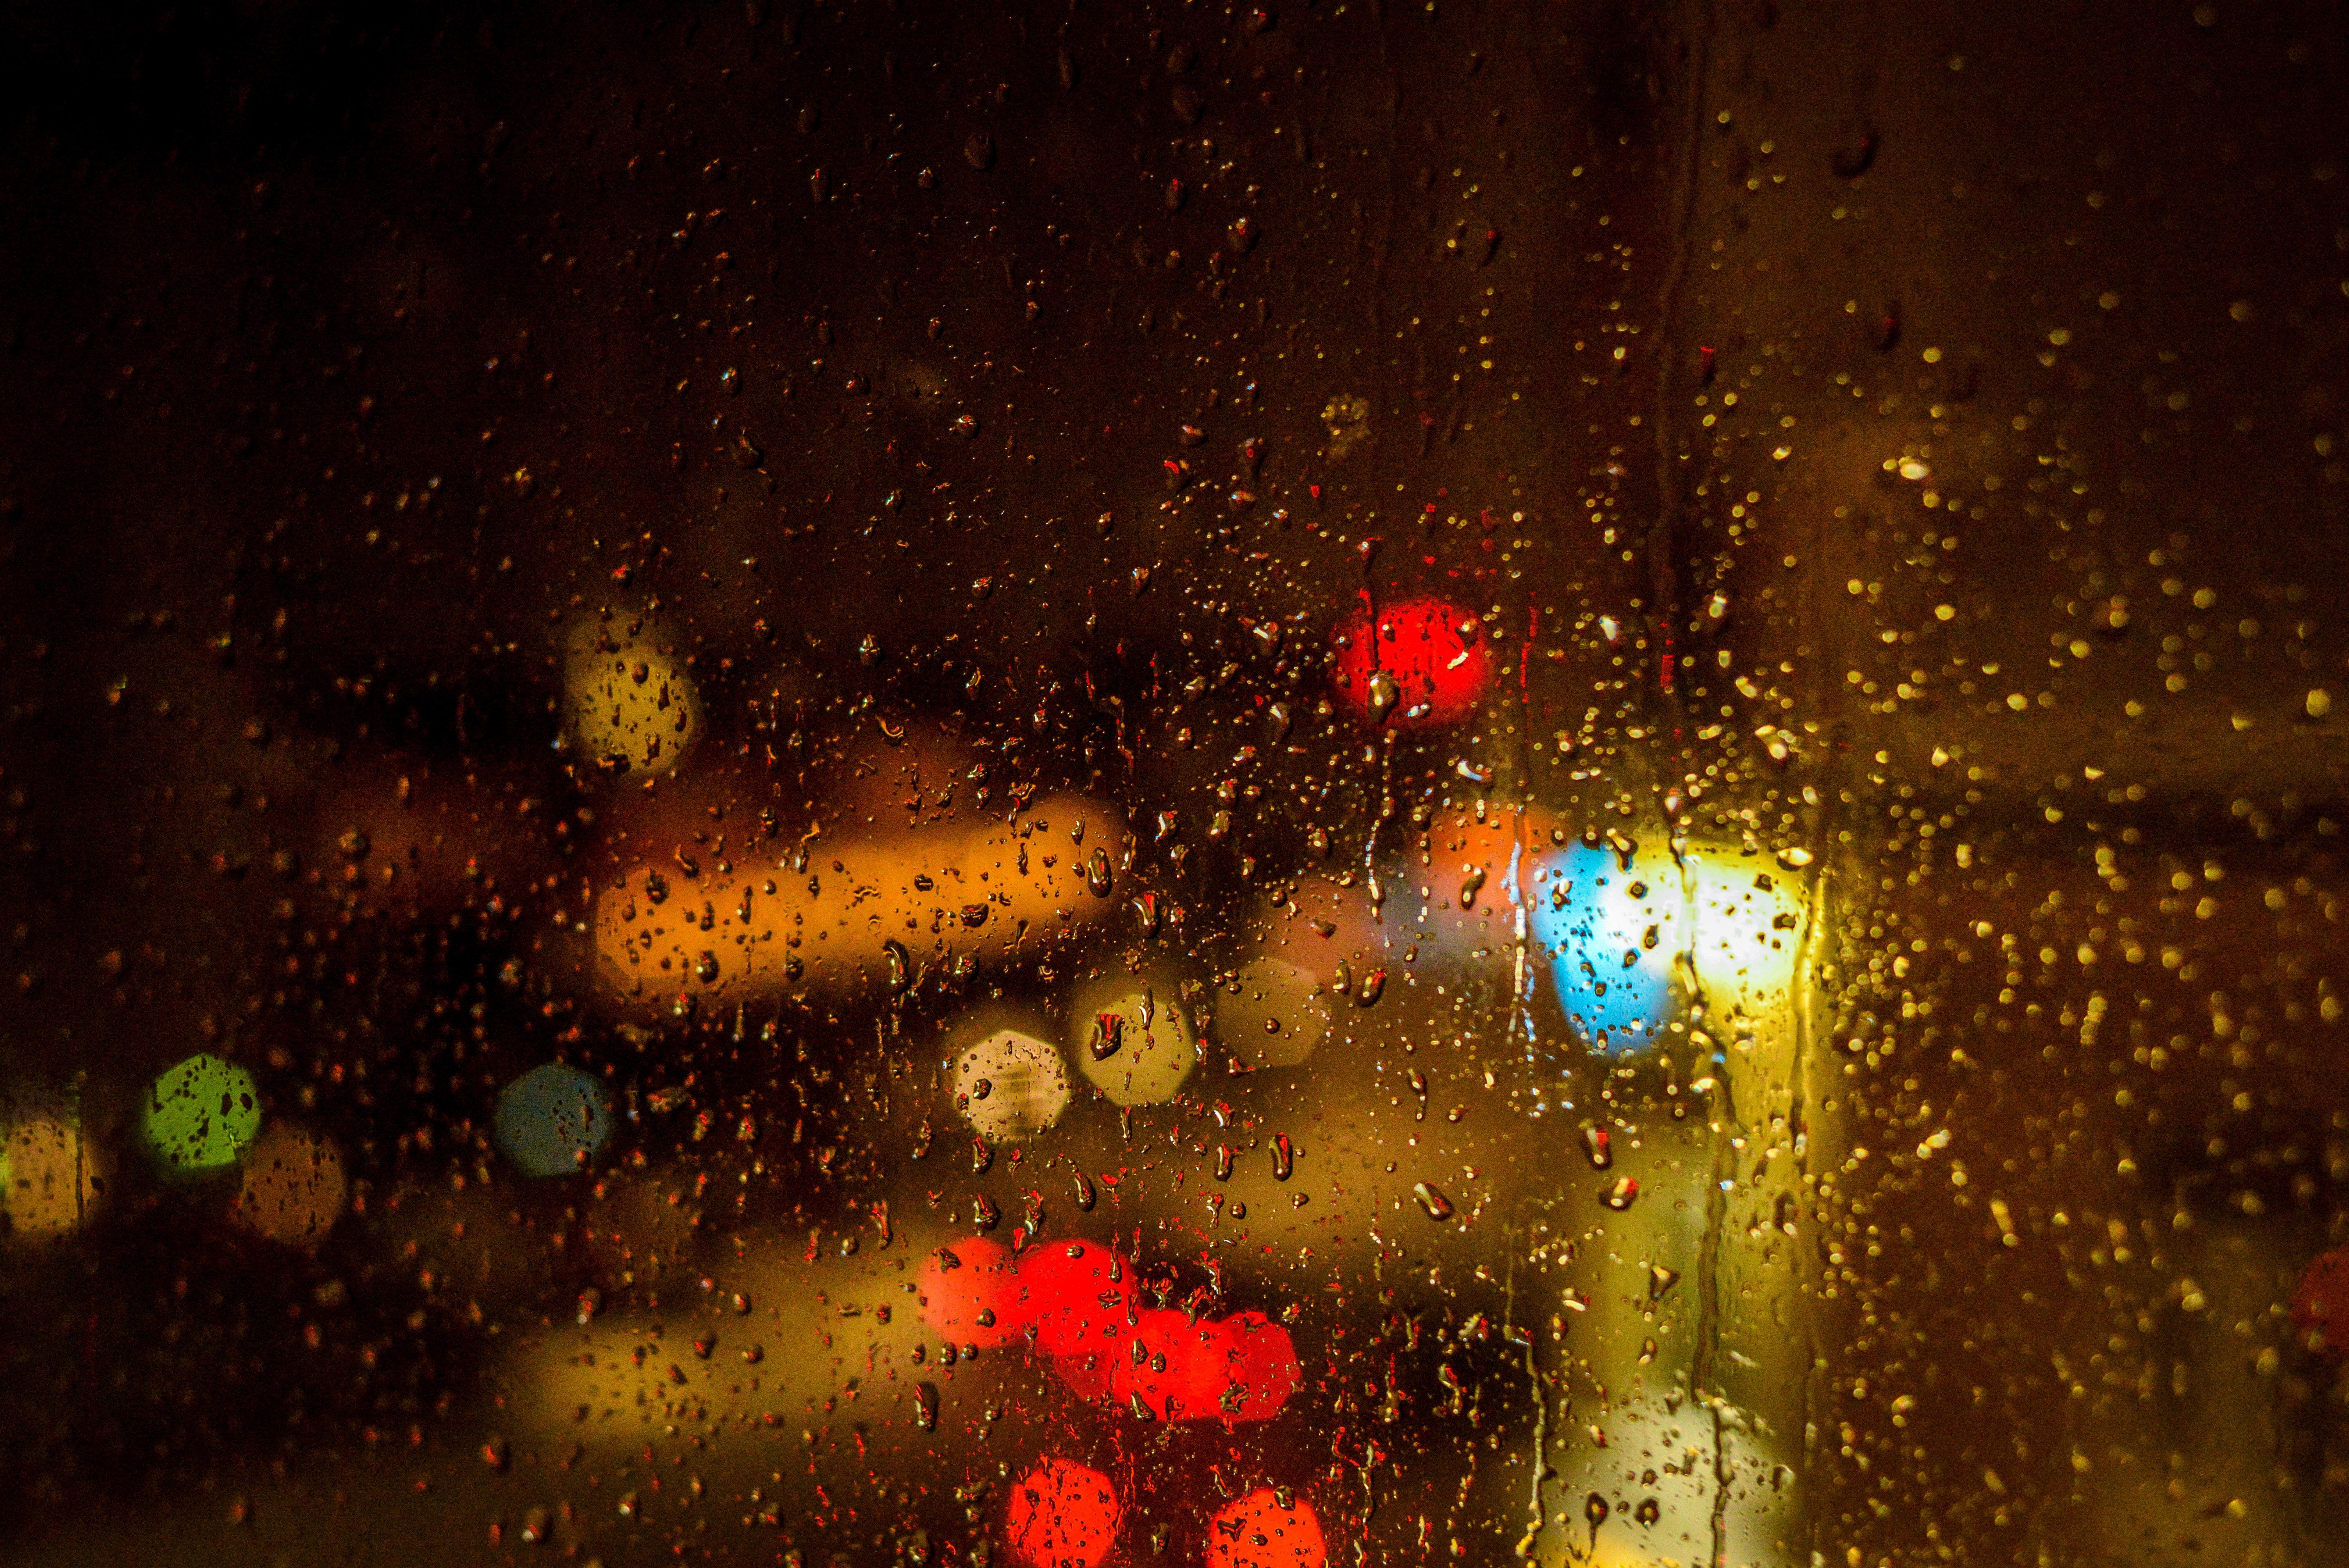 glare, rain, drops, miscellanea, miscellaneous, multicolored, motley, blur, smooth